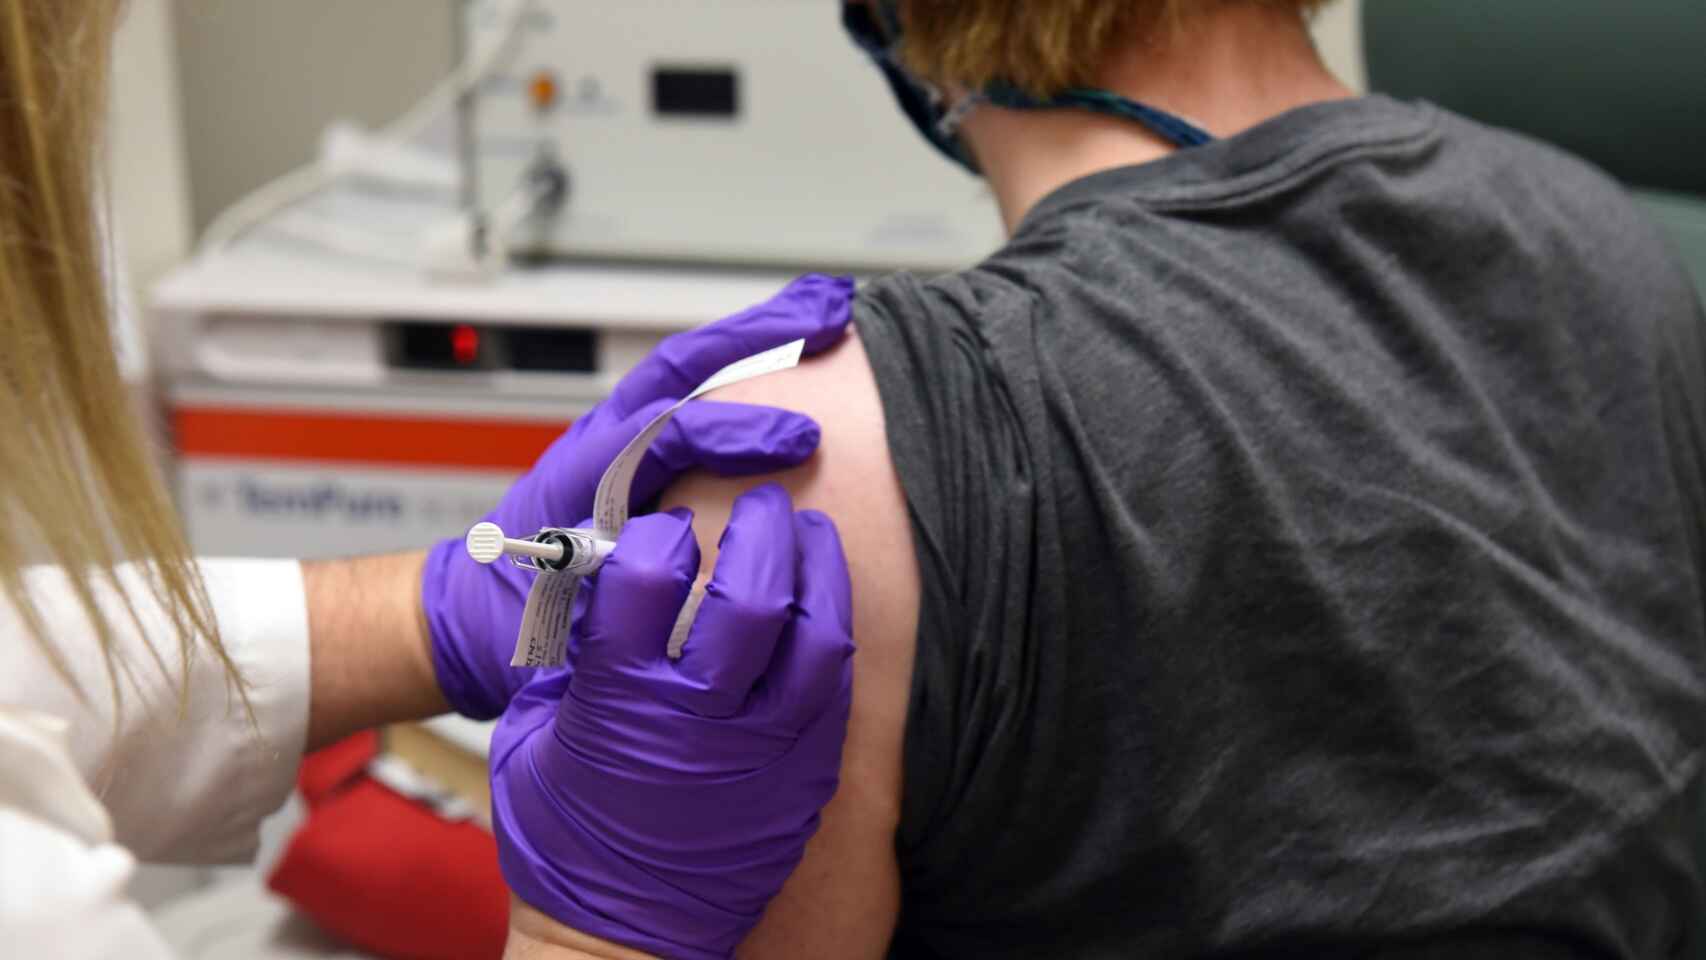 España comenzará a vacunar contra el coronavirus en enero